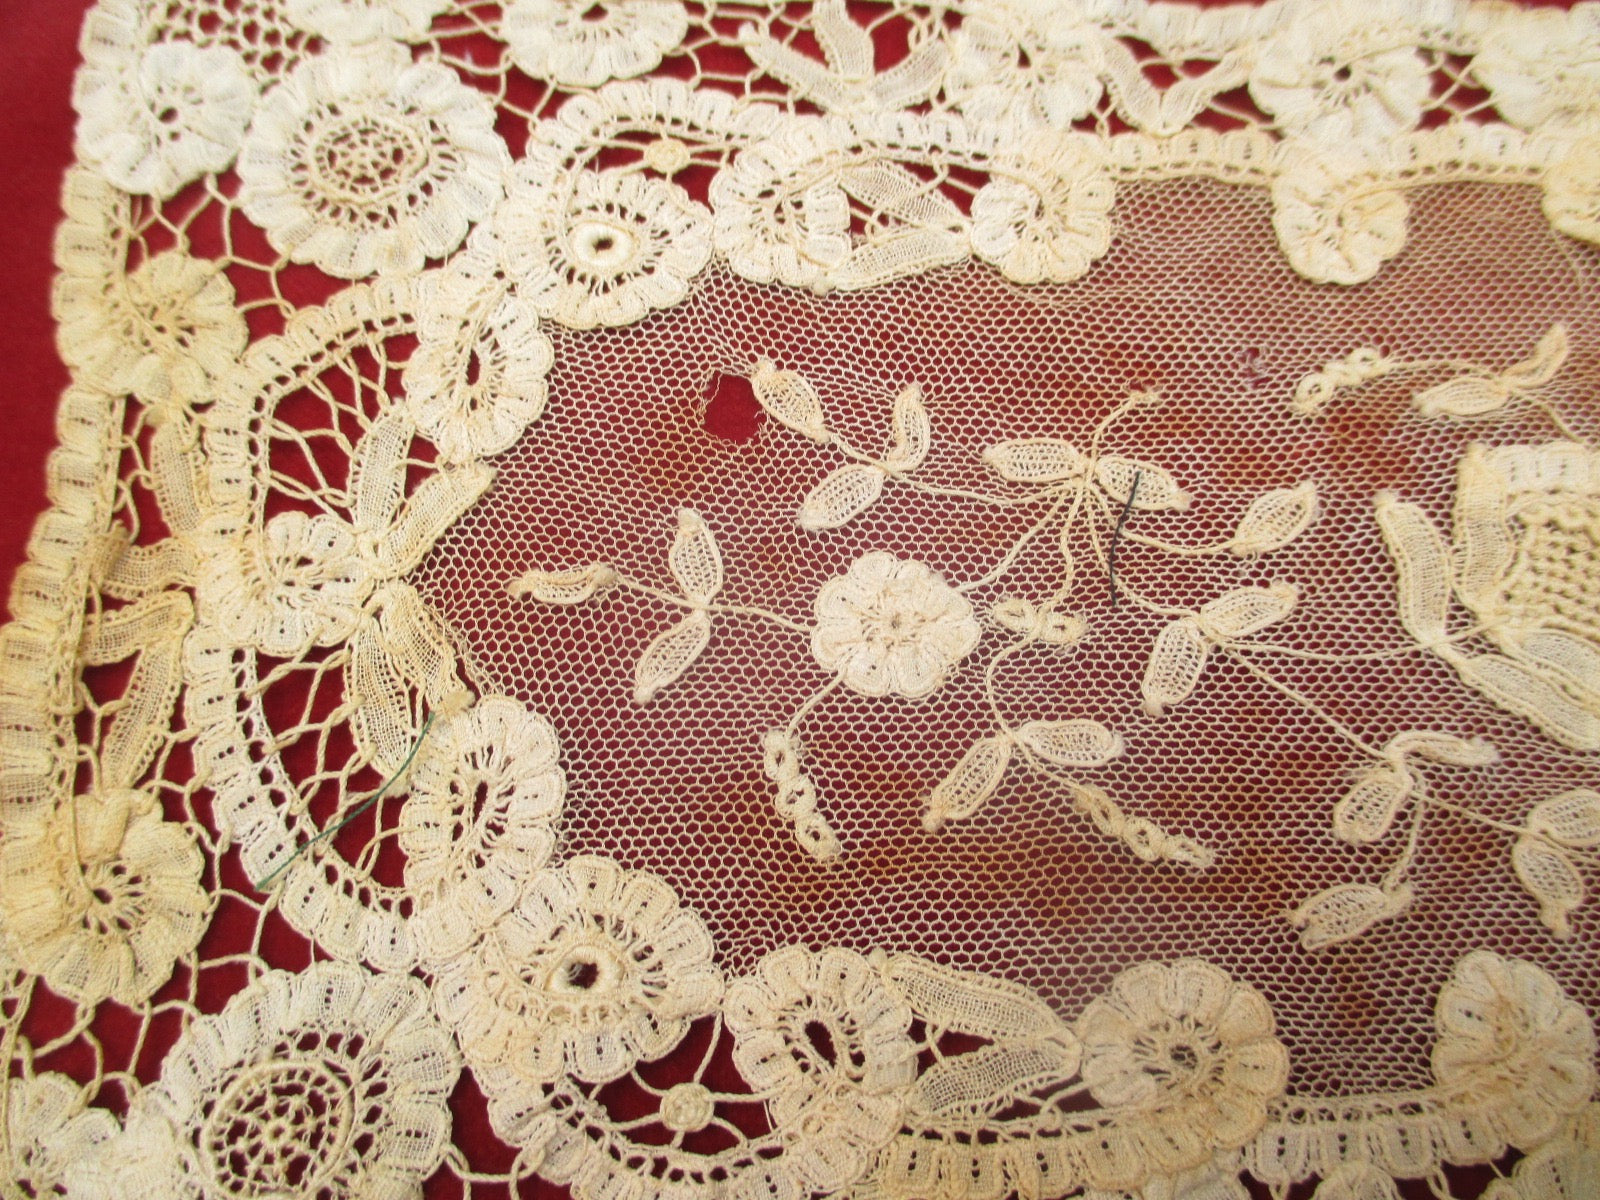 Antique Victorian Lace pieces 2 pc